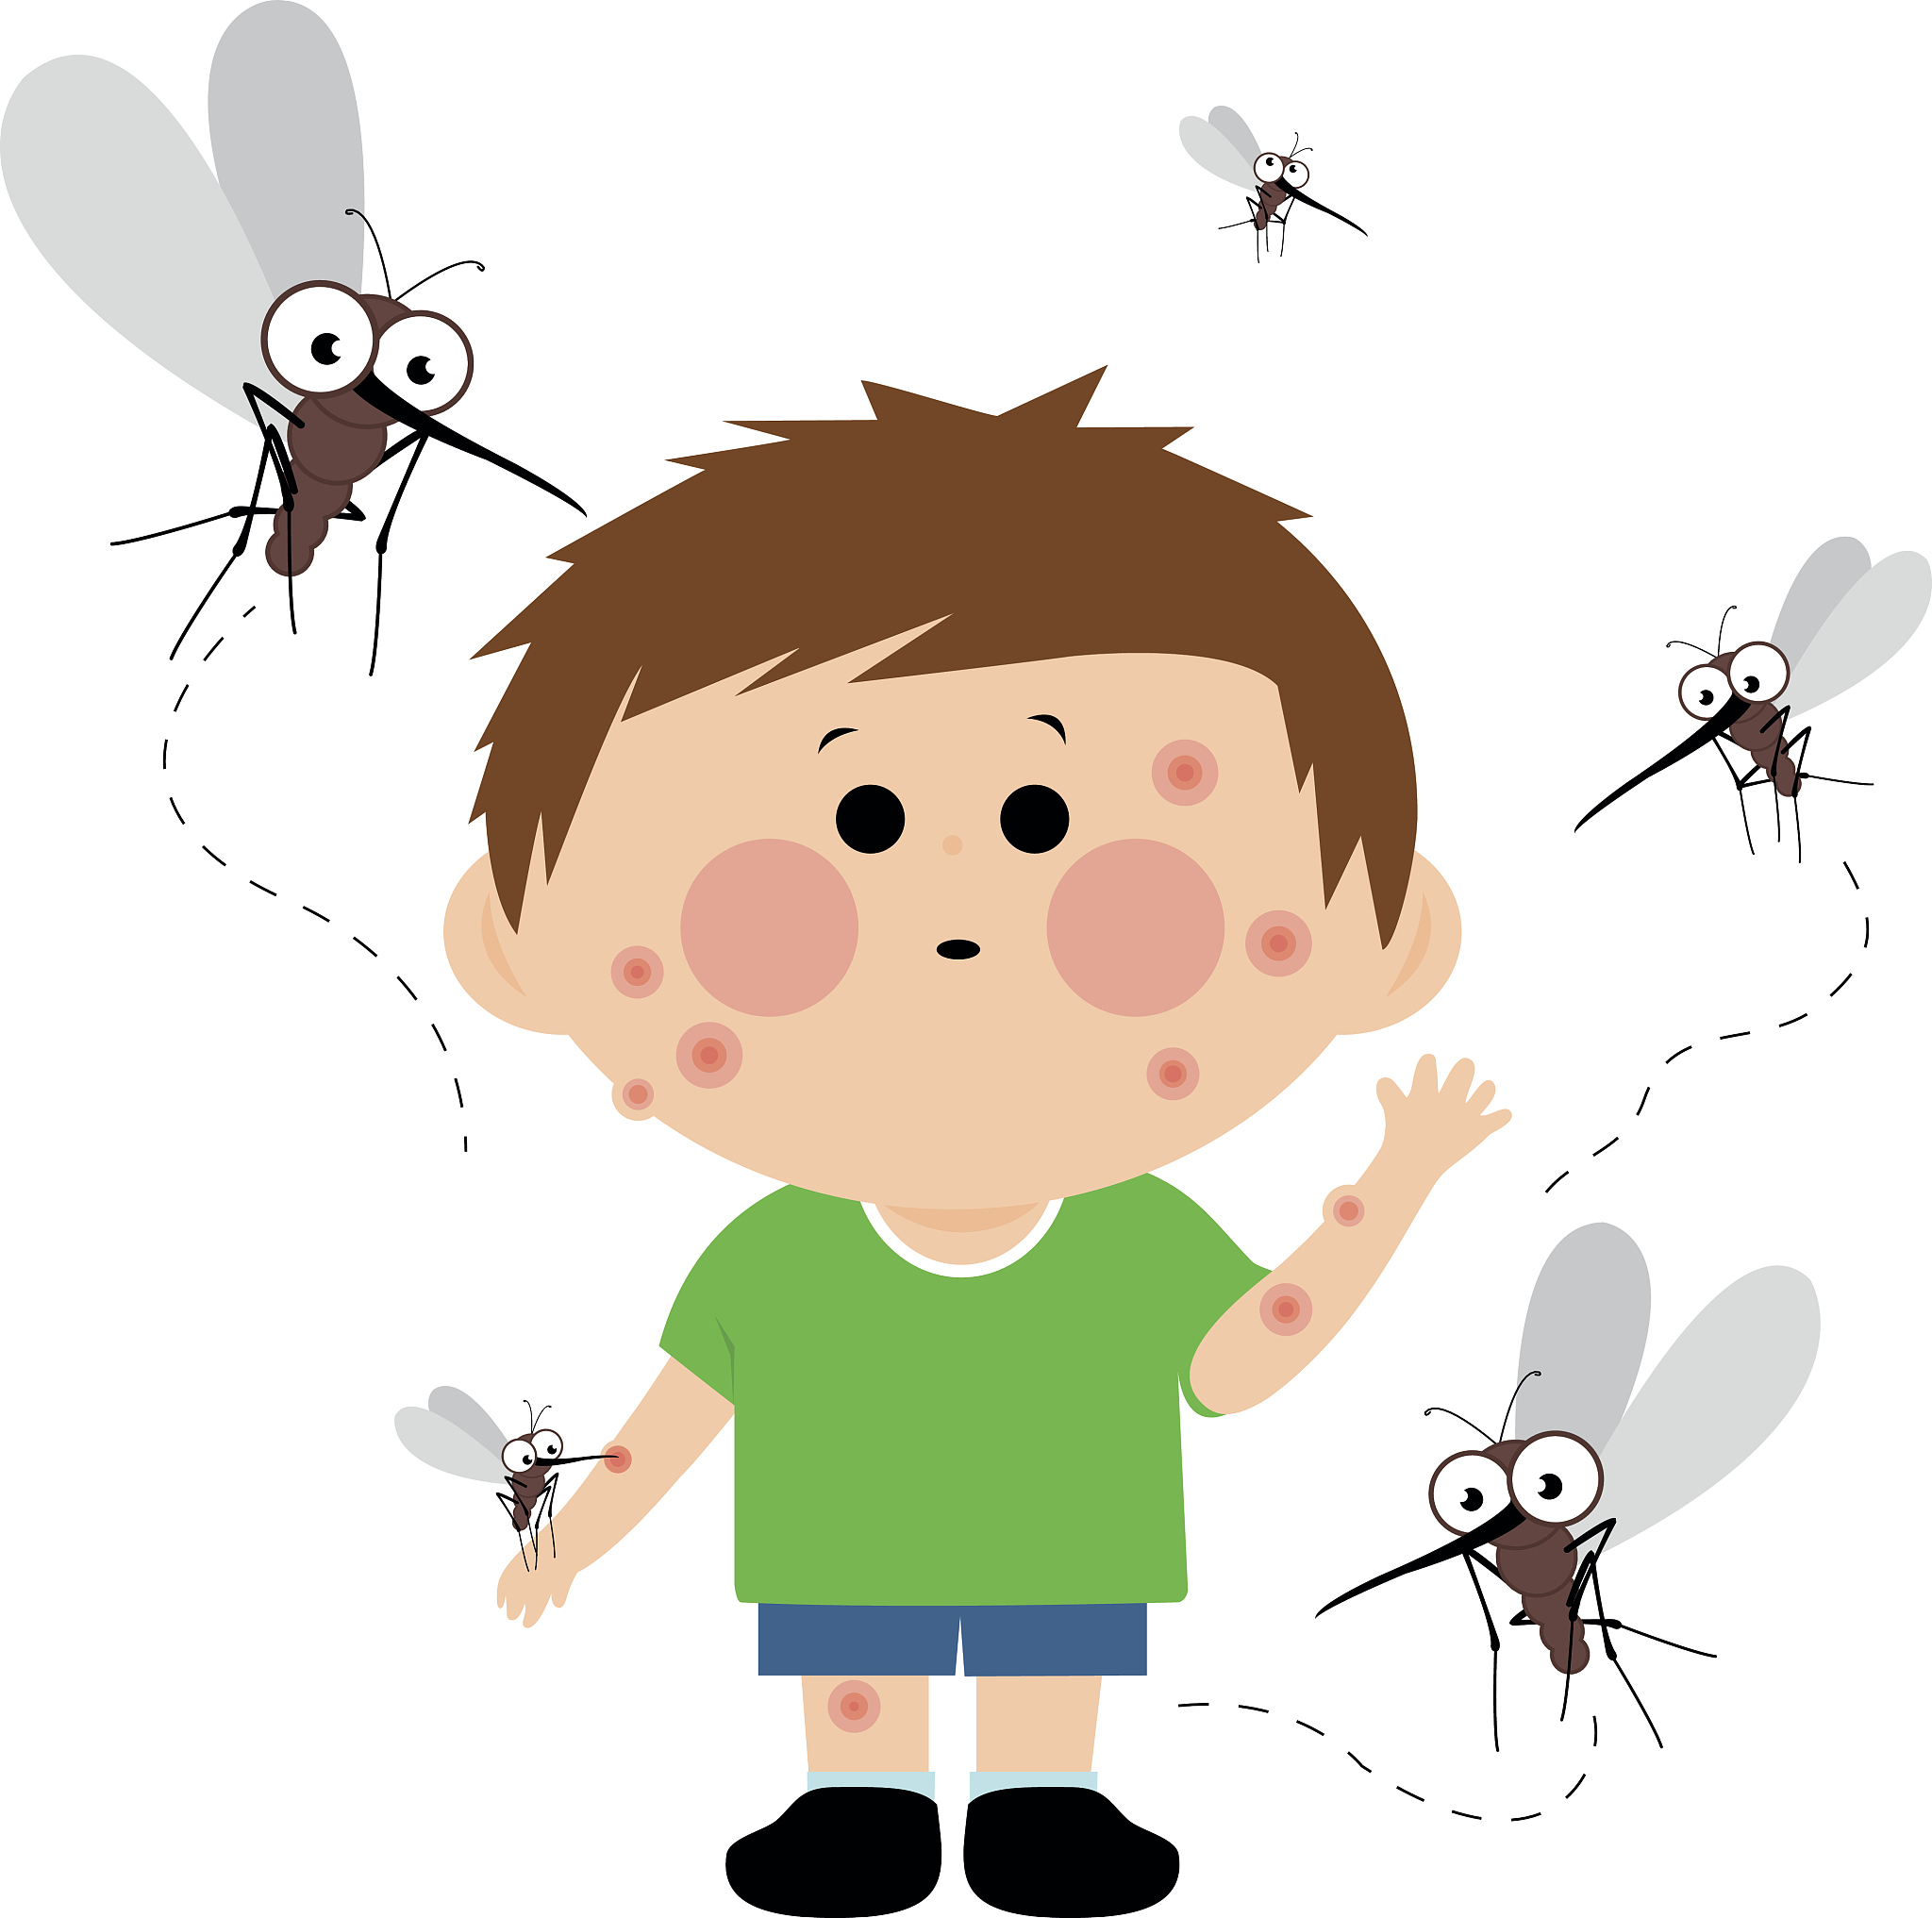 只切掉蚊子的全部腿，而不破坏蚊子其他身体部分，蚊子还能飞起来么？ - 知乎